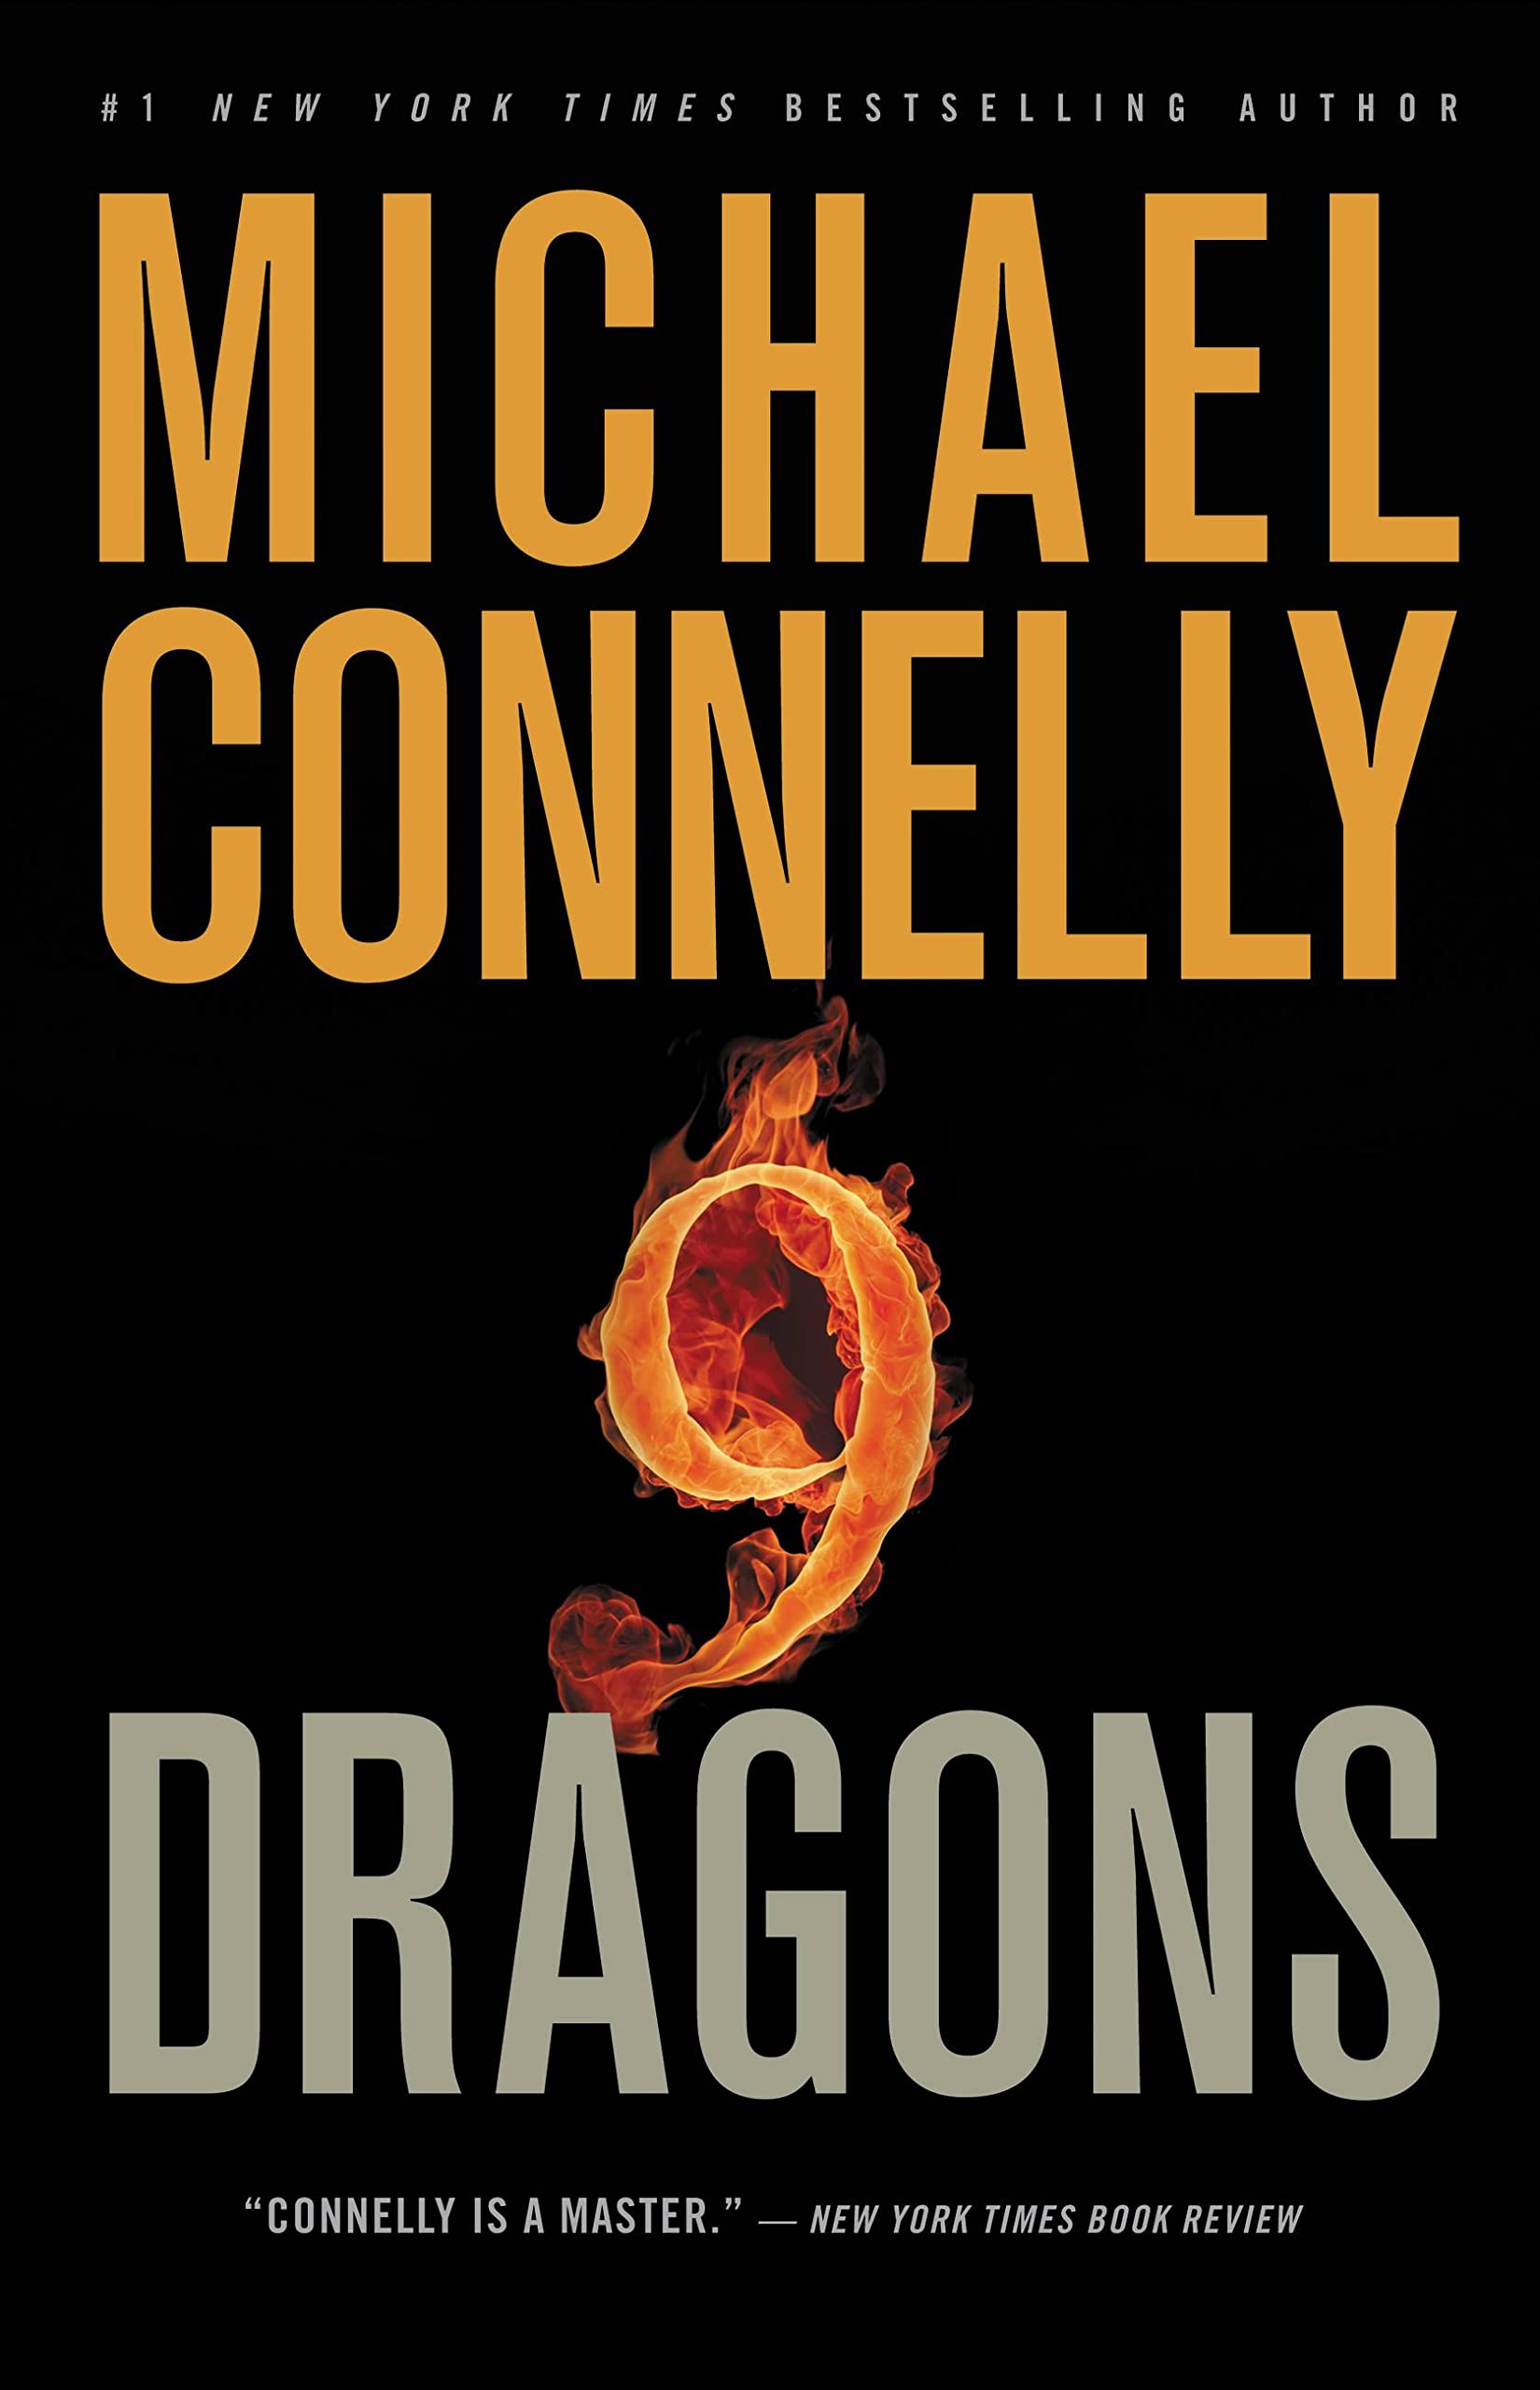 Nine Dragons (A Harry Bosch Novel Book 14)